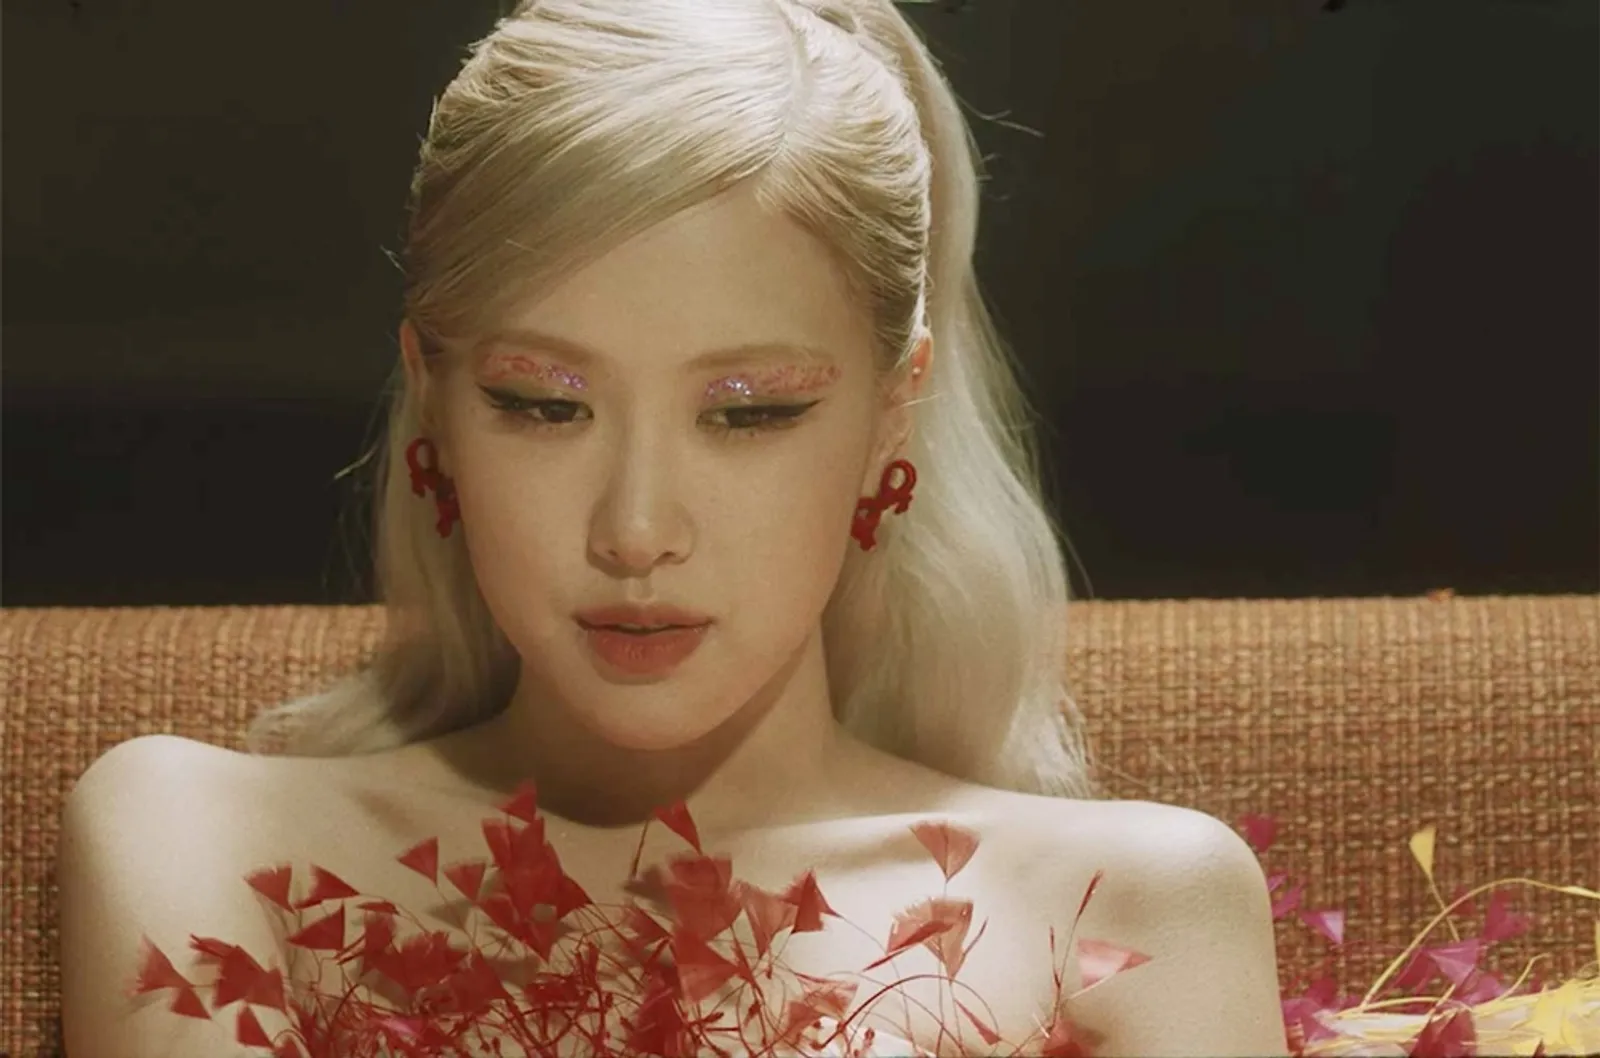 Luput dari Perhatian, 7 Fakta Penting MV 'Gone' Rose BLACKPINK